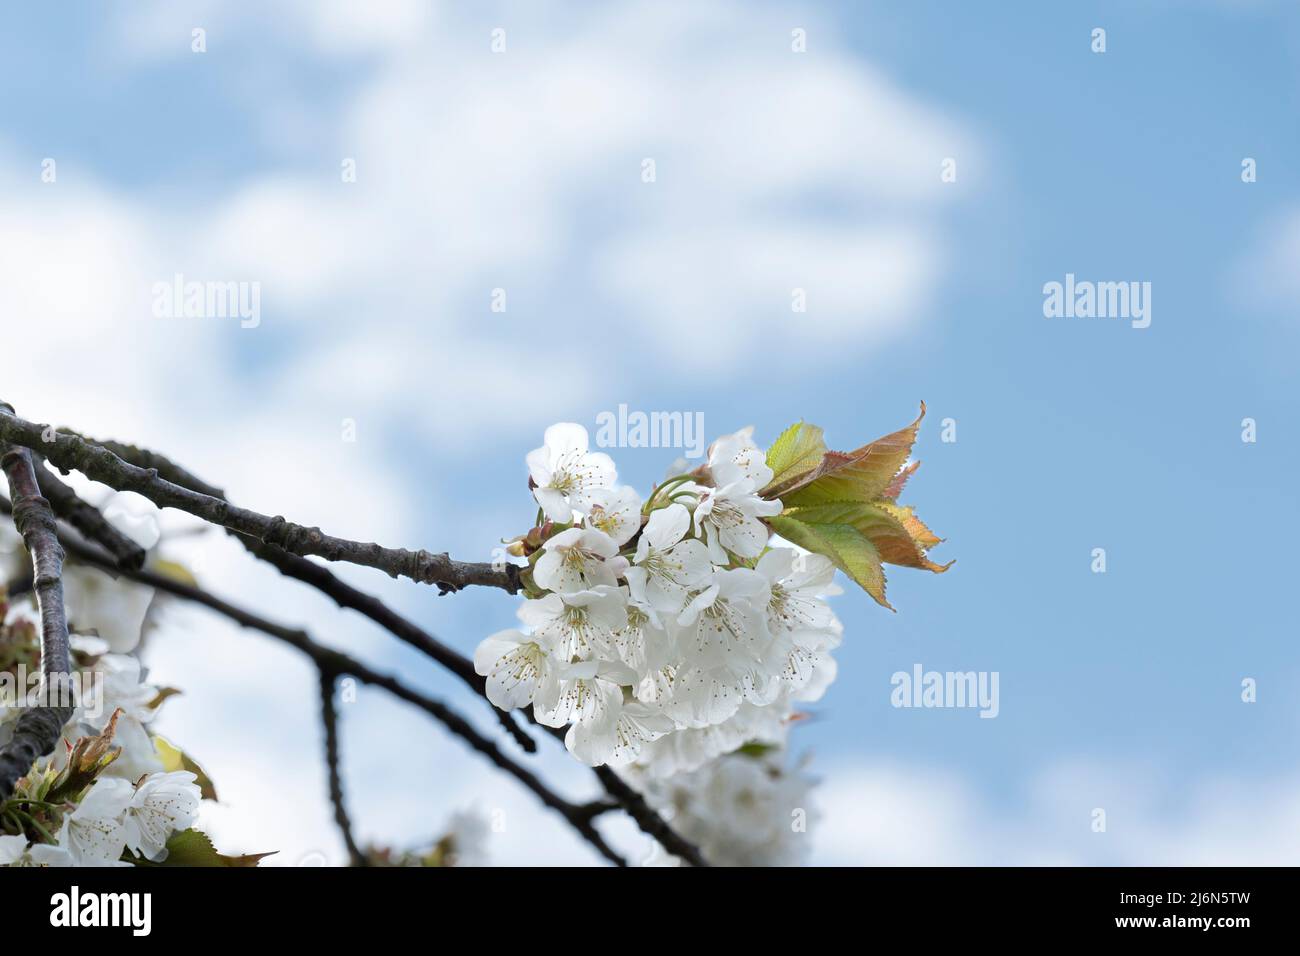 Nahaufnahme eines weiß blühenden Kirschzweiges vor blauem Himmel mit Wolken Stockfoto